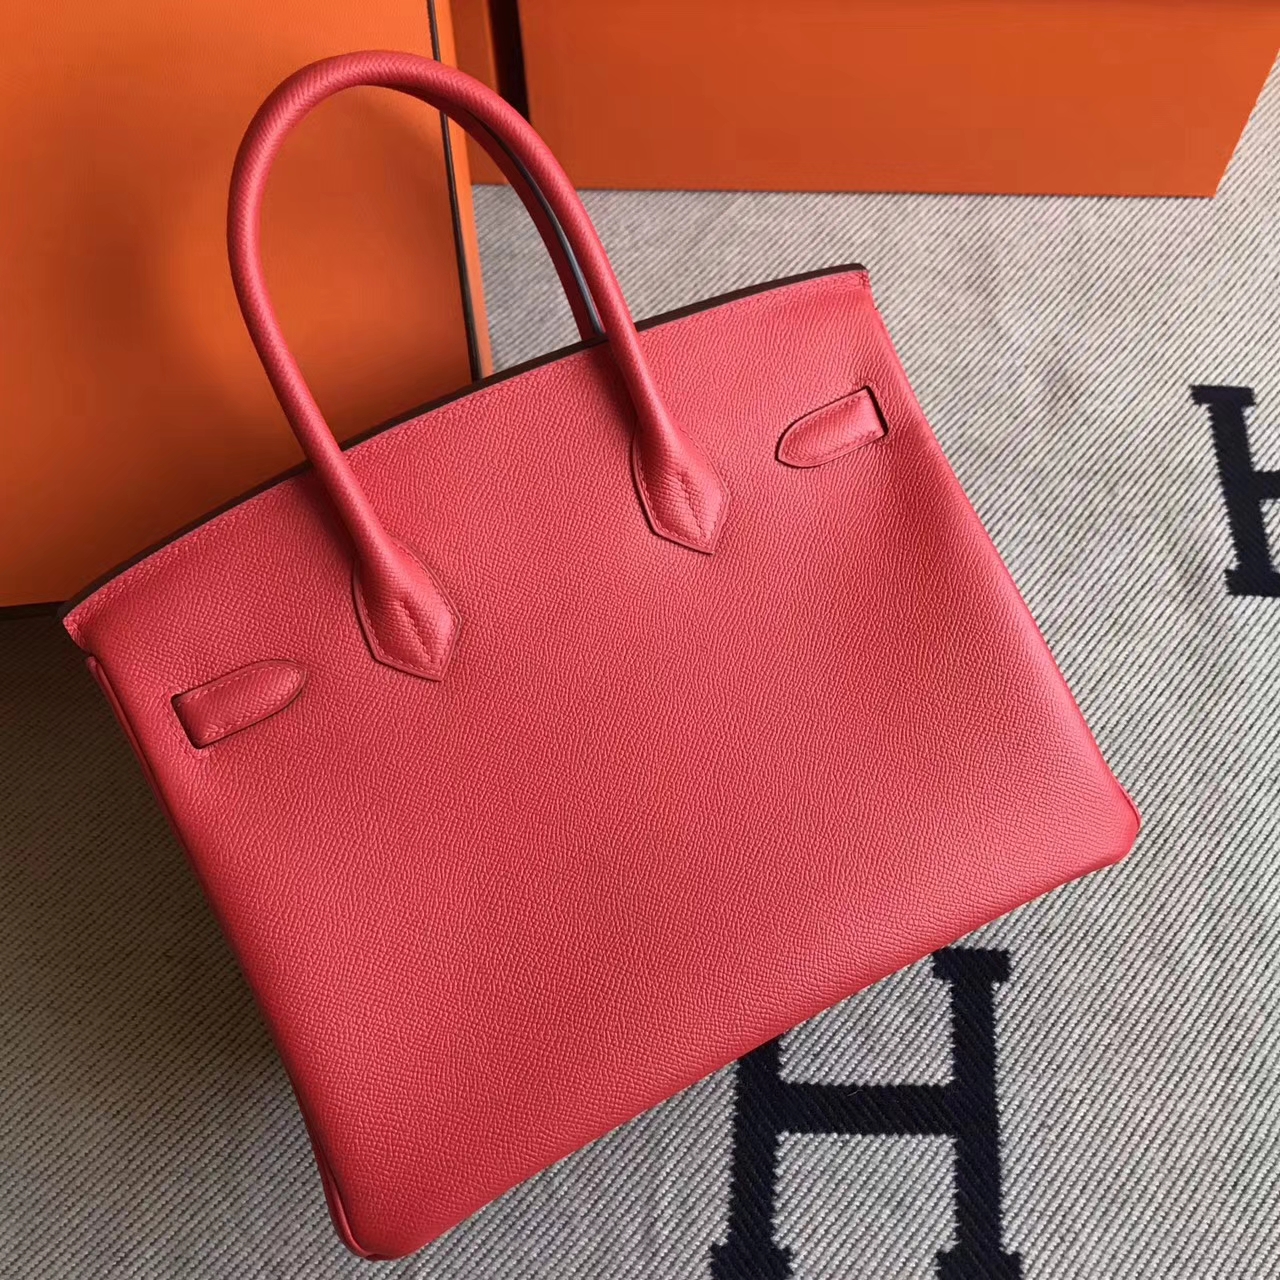 Discount Hermes Epsom Leather Birkin30cm Handbag in Q5 Rouge Casaque